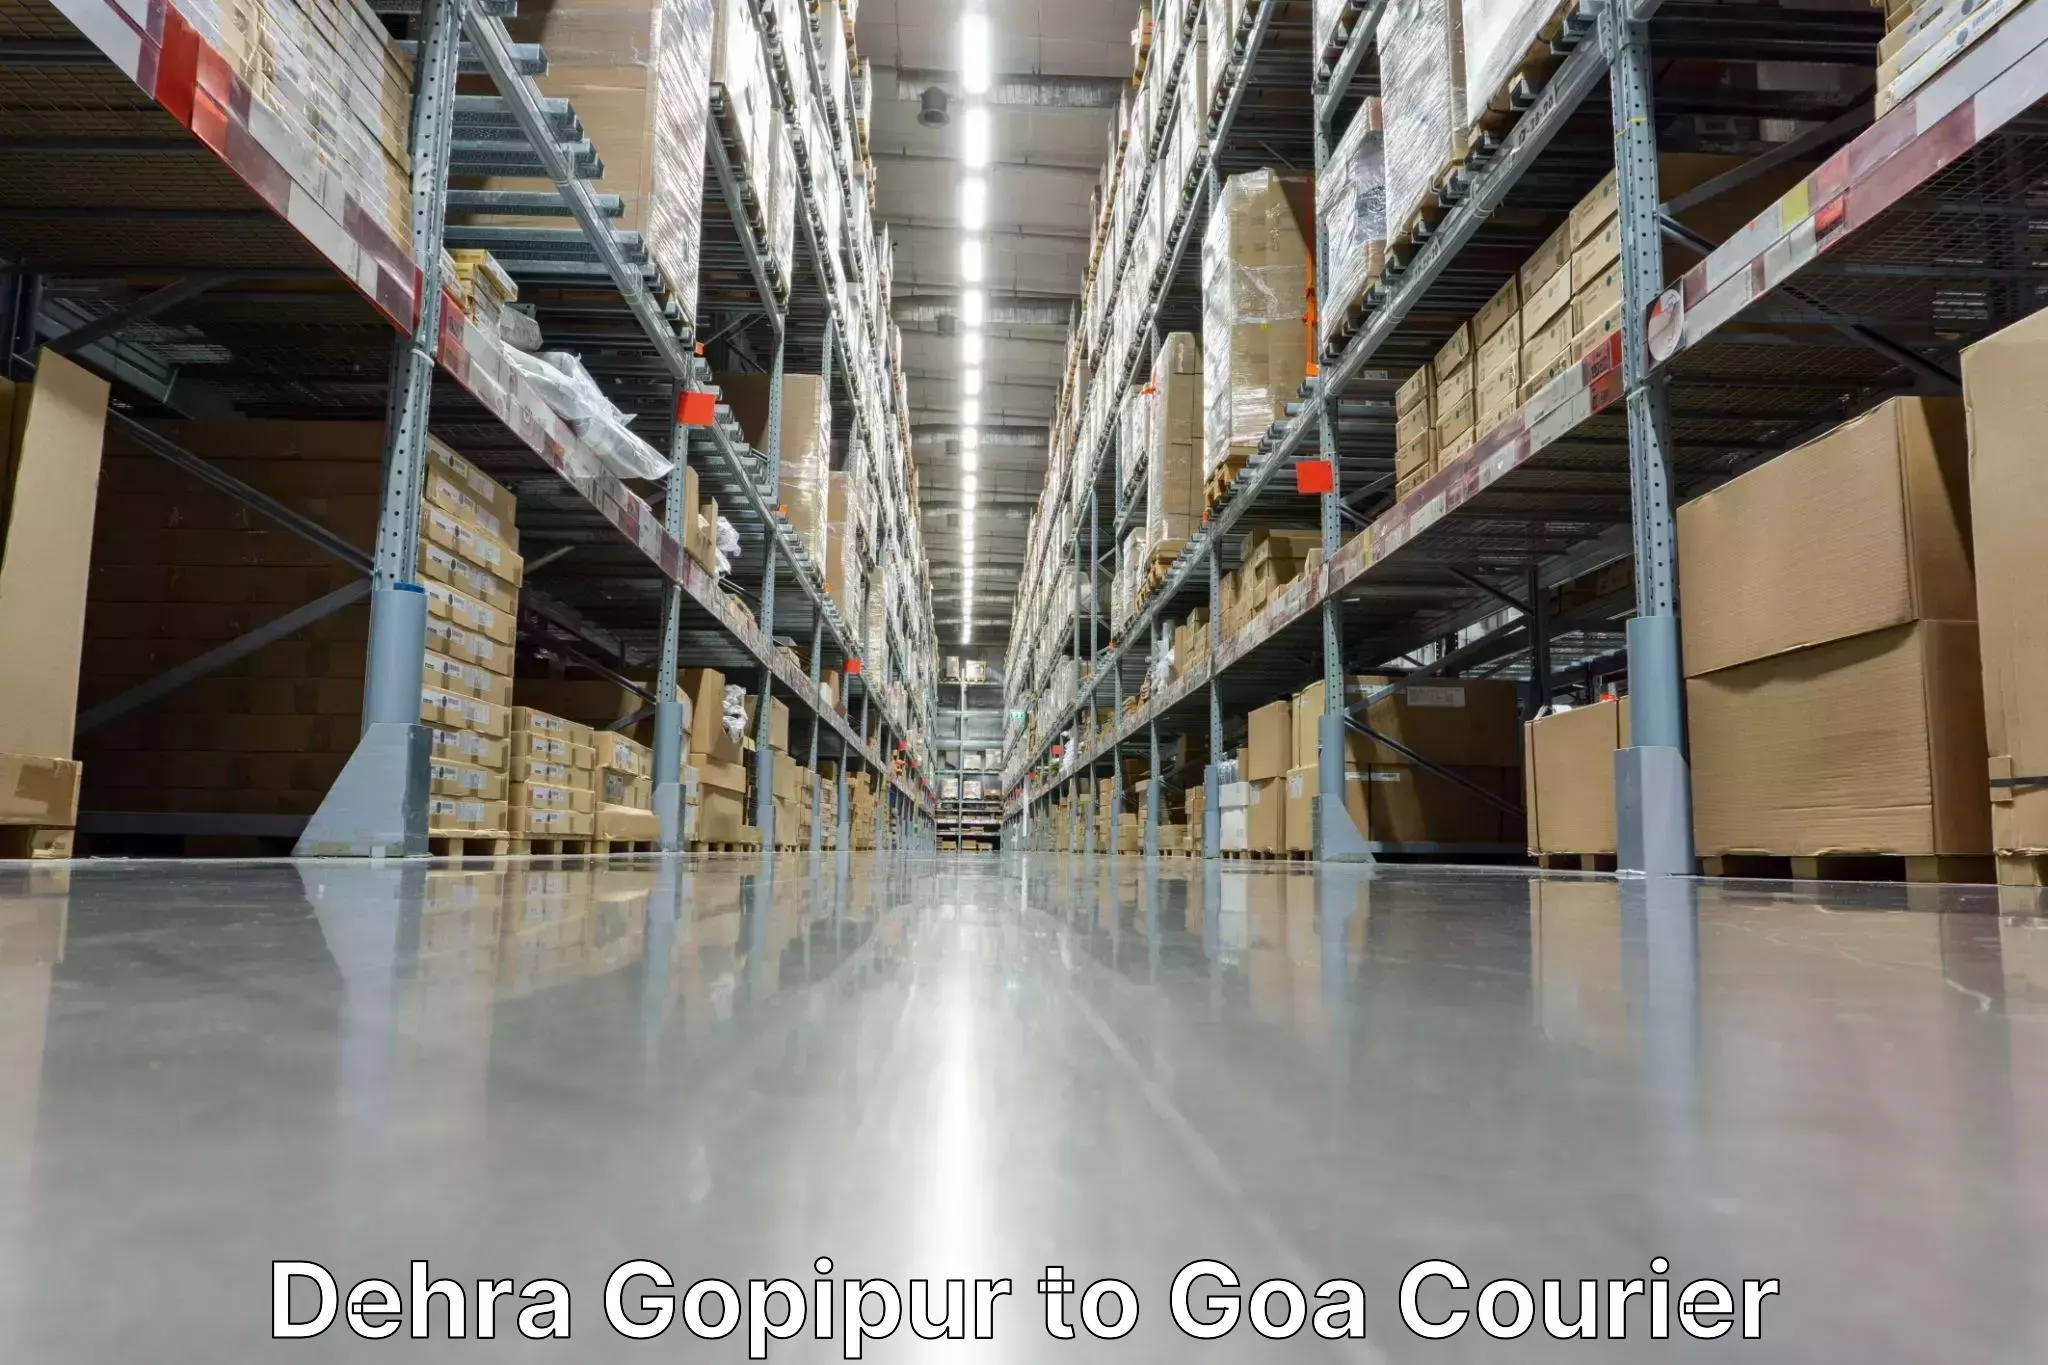 Digital courier platforms Dehra Gopipur to Bicholim